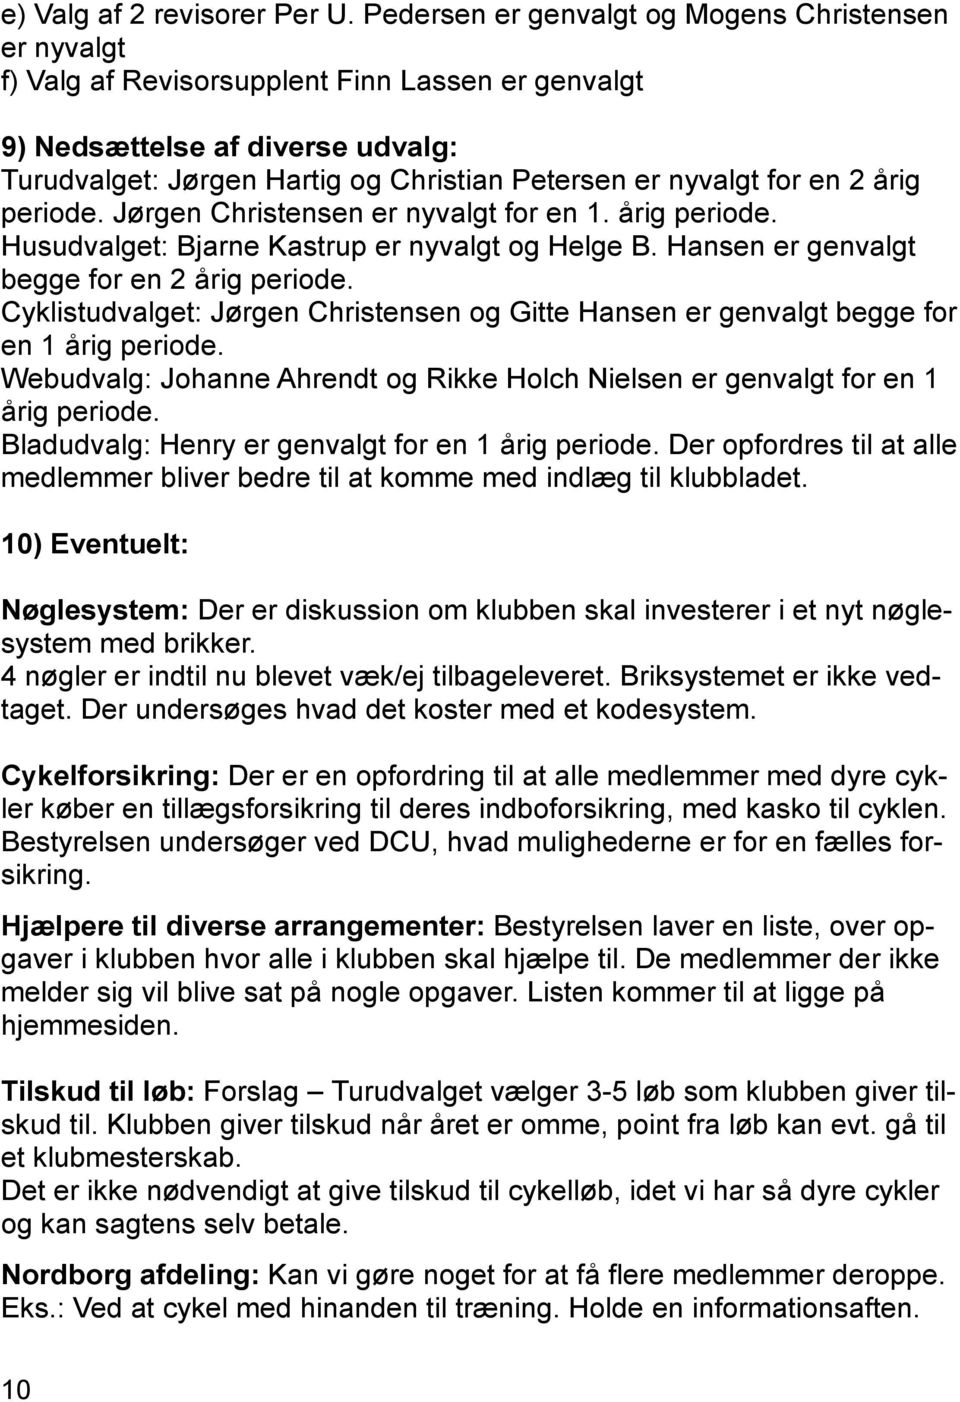 for en 2 årig periode. Jørgen Christensen er nyvalgt for en 1. årig periode. Husudvalget: Bjarne Kastrup er nyvalgt og Helge B. Hansen er genvalgt begge for en 2 årig periode.